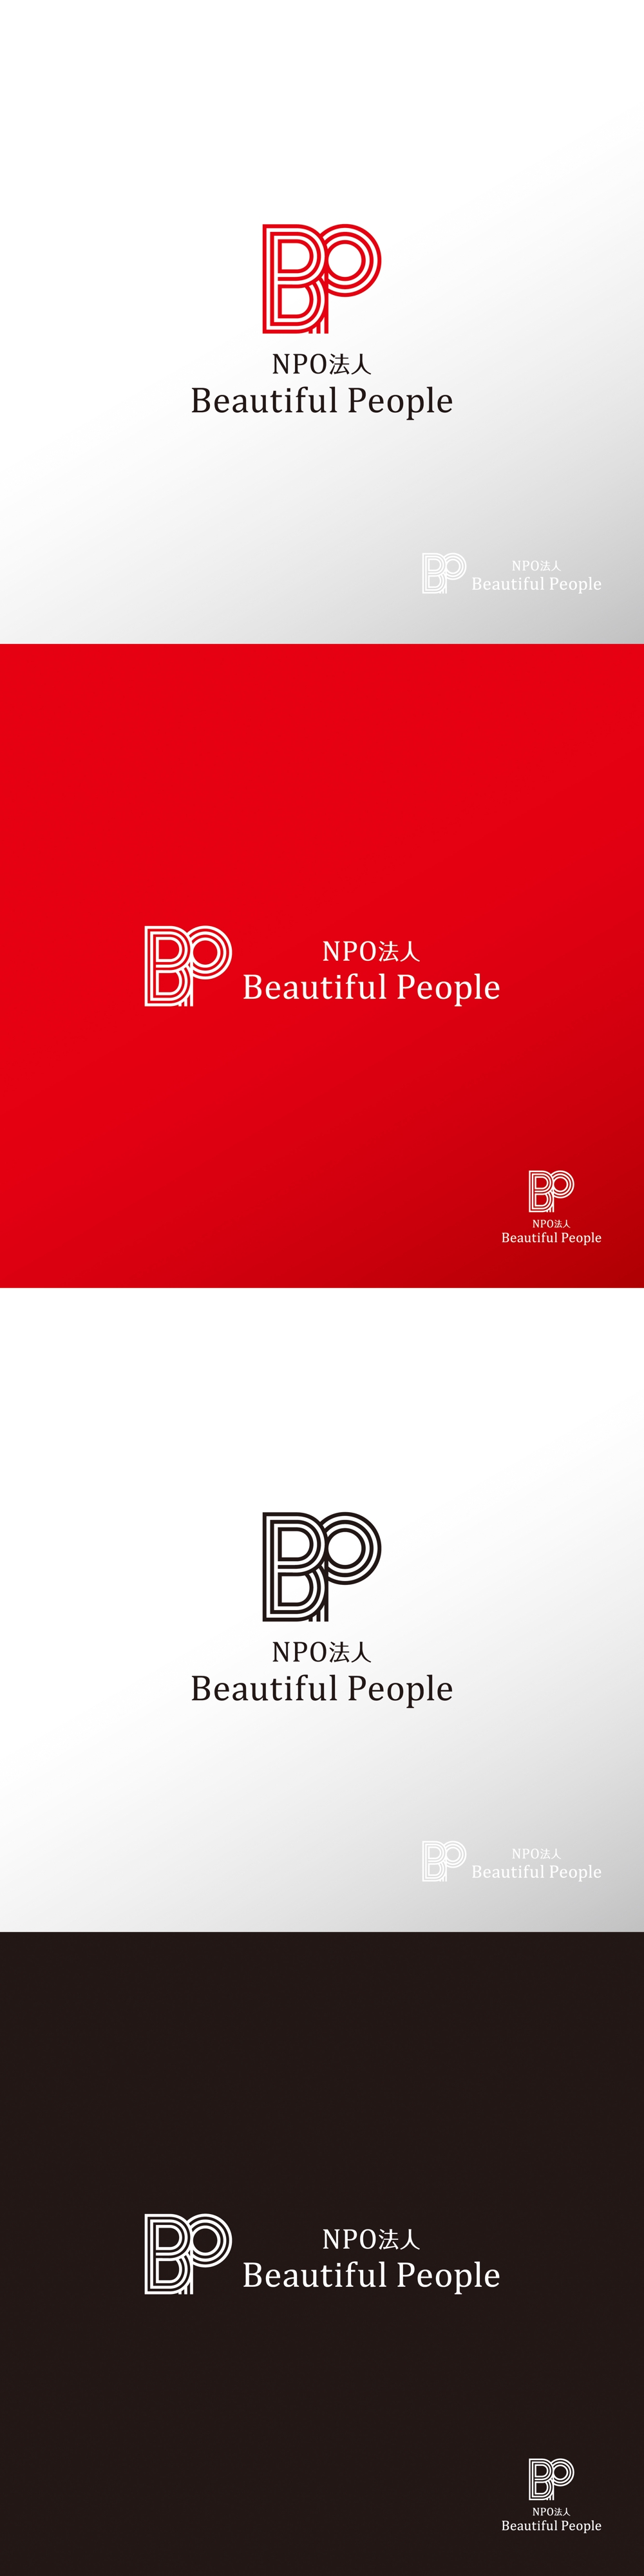 支援_Beautiful People_ロゴA1.jpg